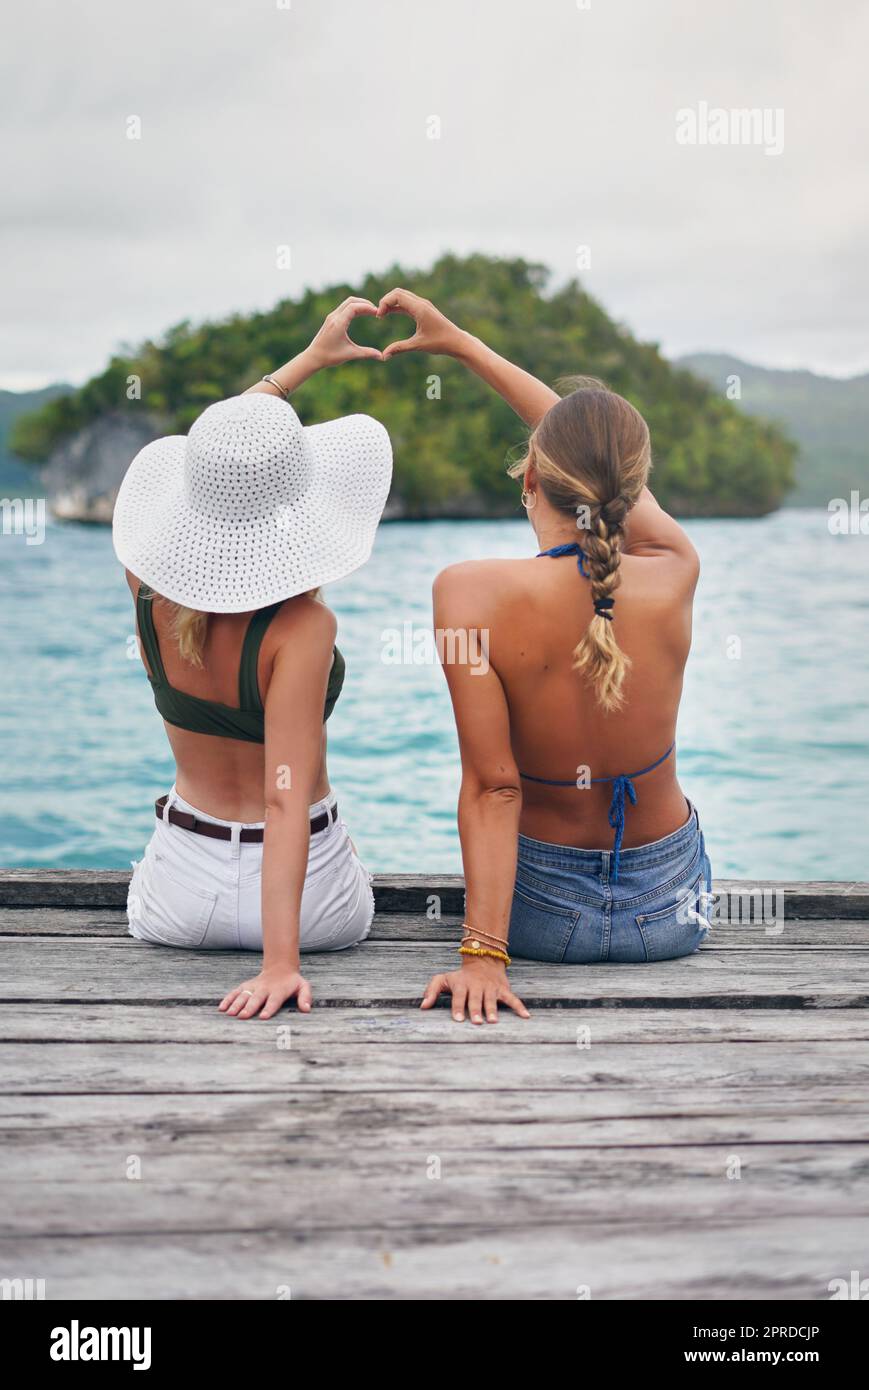 Freunde, die zusammen reisen, bleiben zusammen. Rückansicht von zwei unbekannten Frauen, die am Rande eines Boardwalk sitzen und eine Herzzeichen-Geste machen. Stockfoto